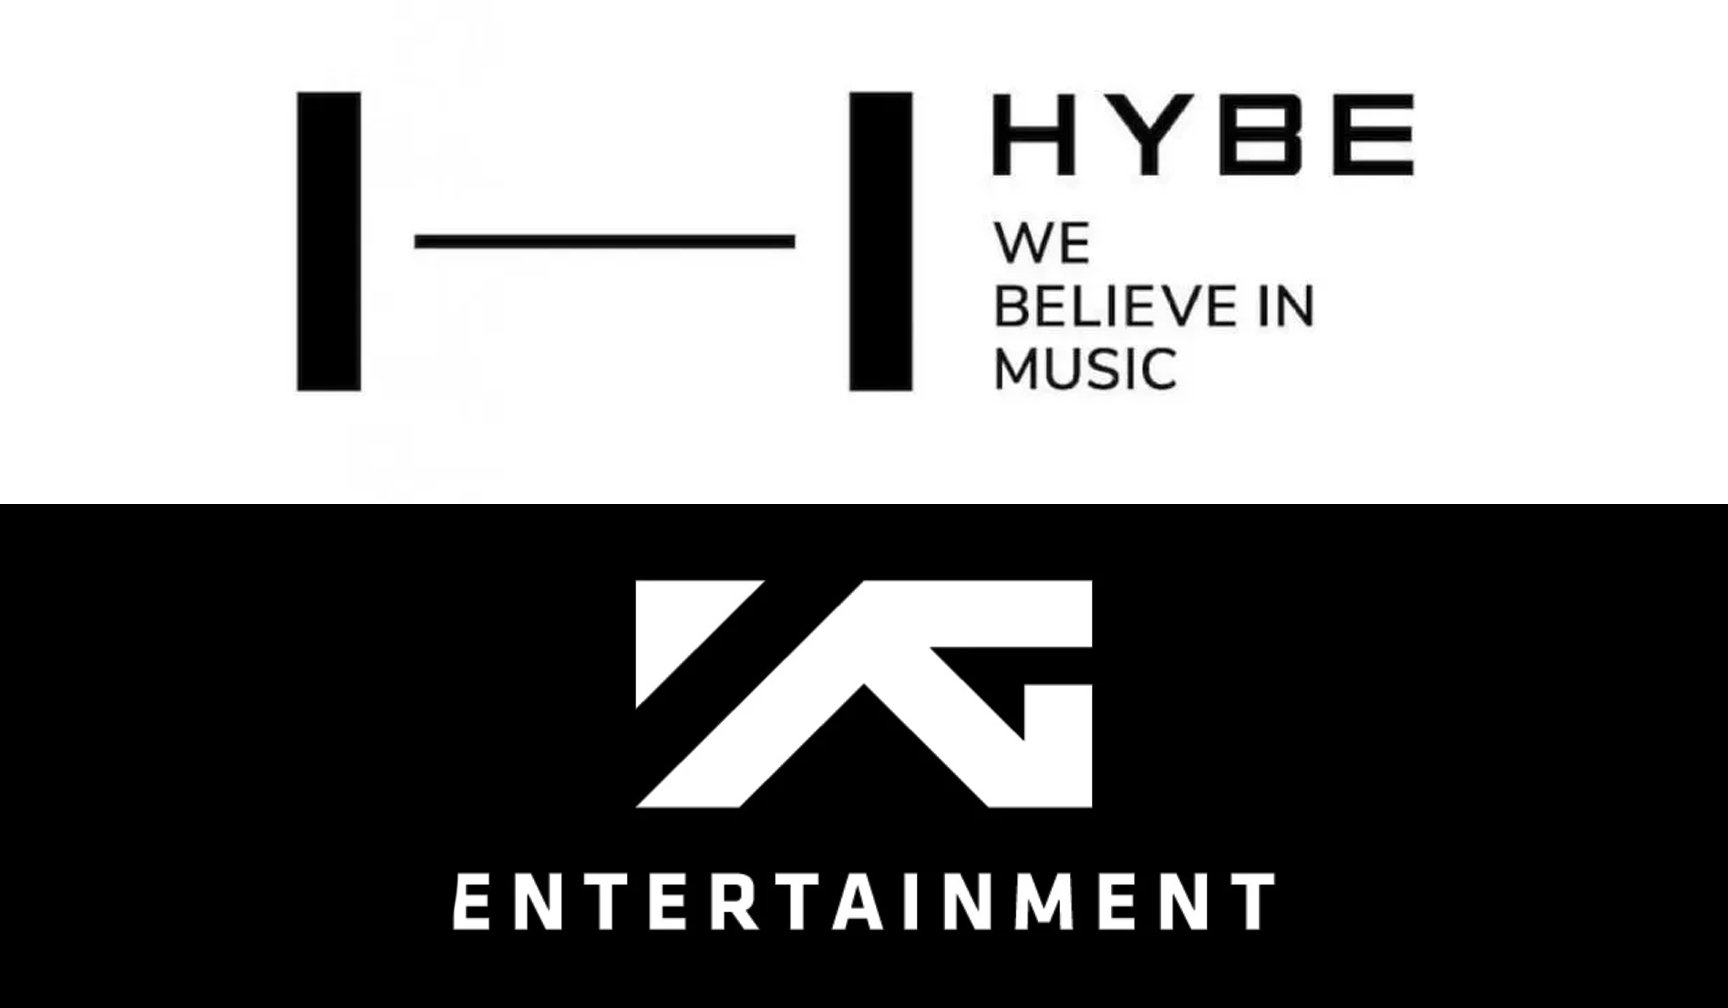 YG和Hype进行合作，JYP和SM强强联手，韩国娱乐圈迎来新局面